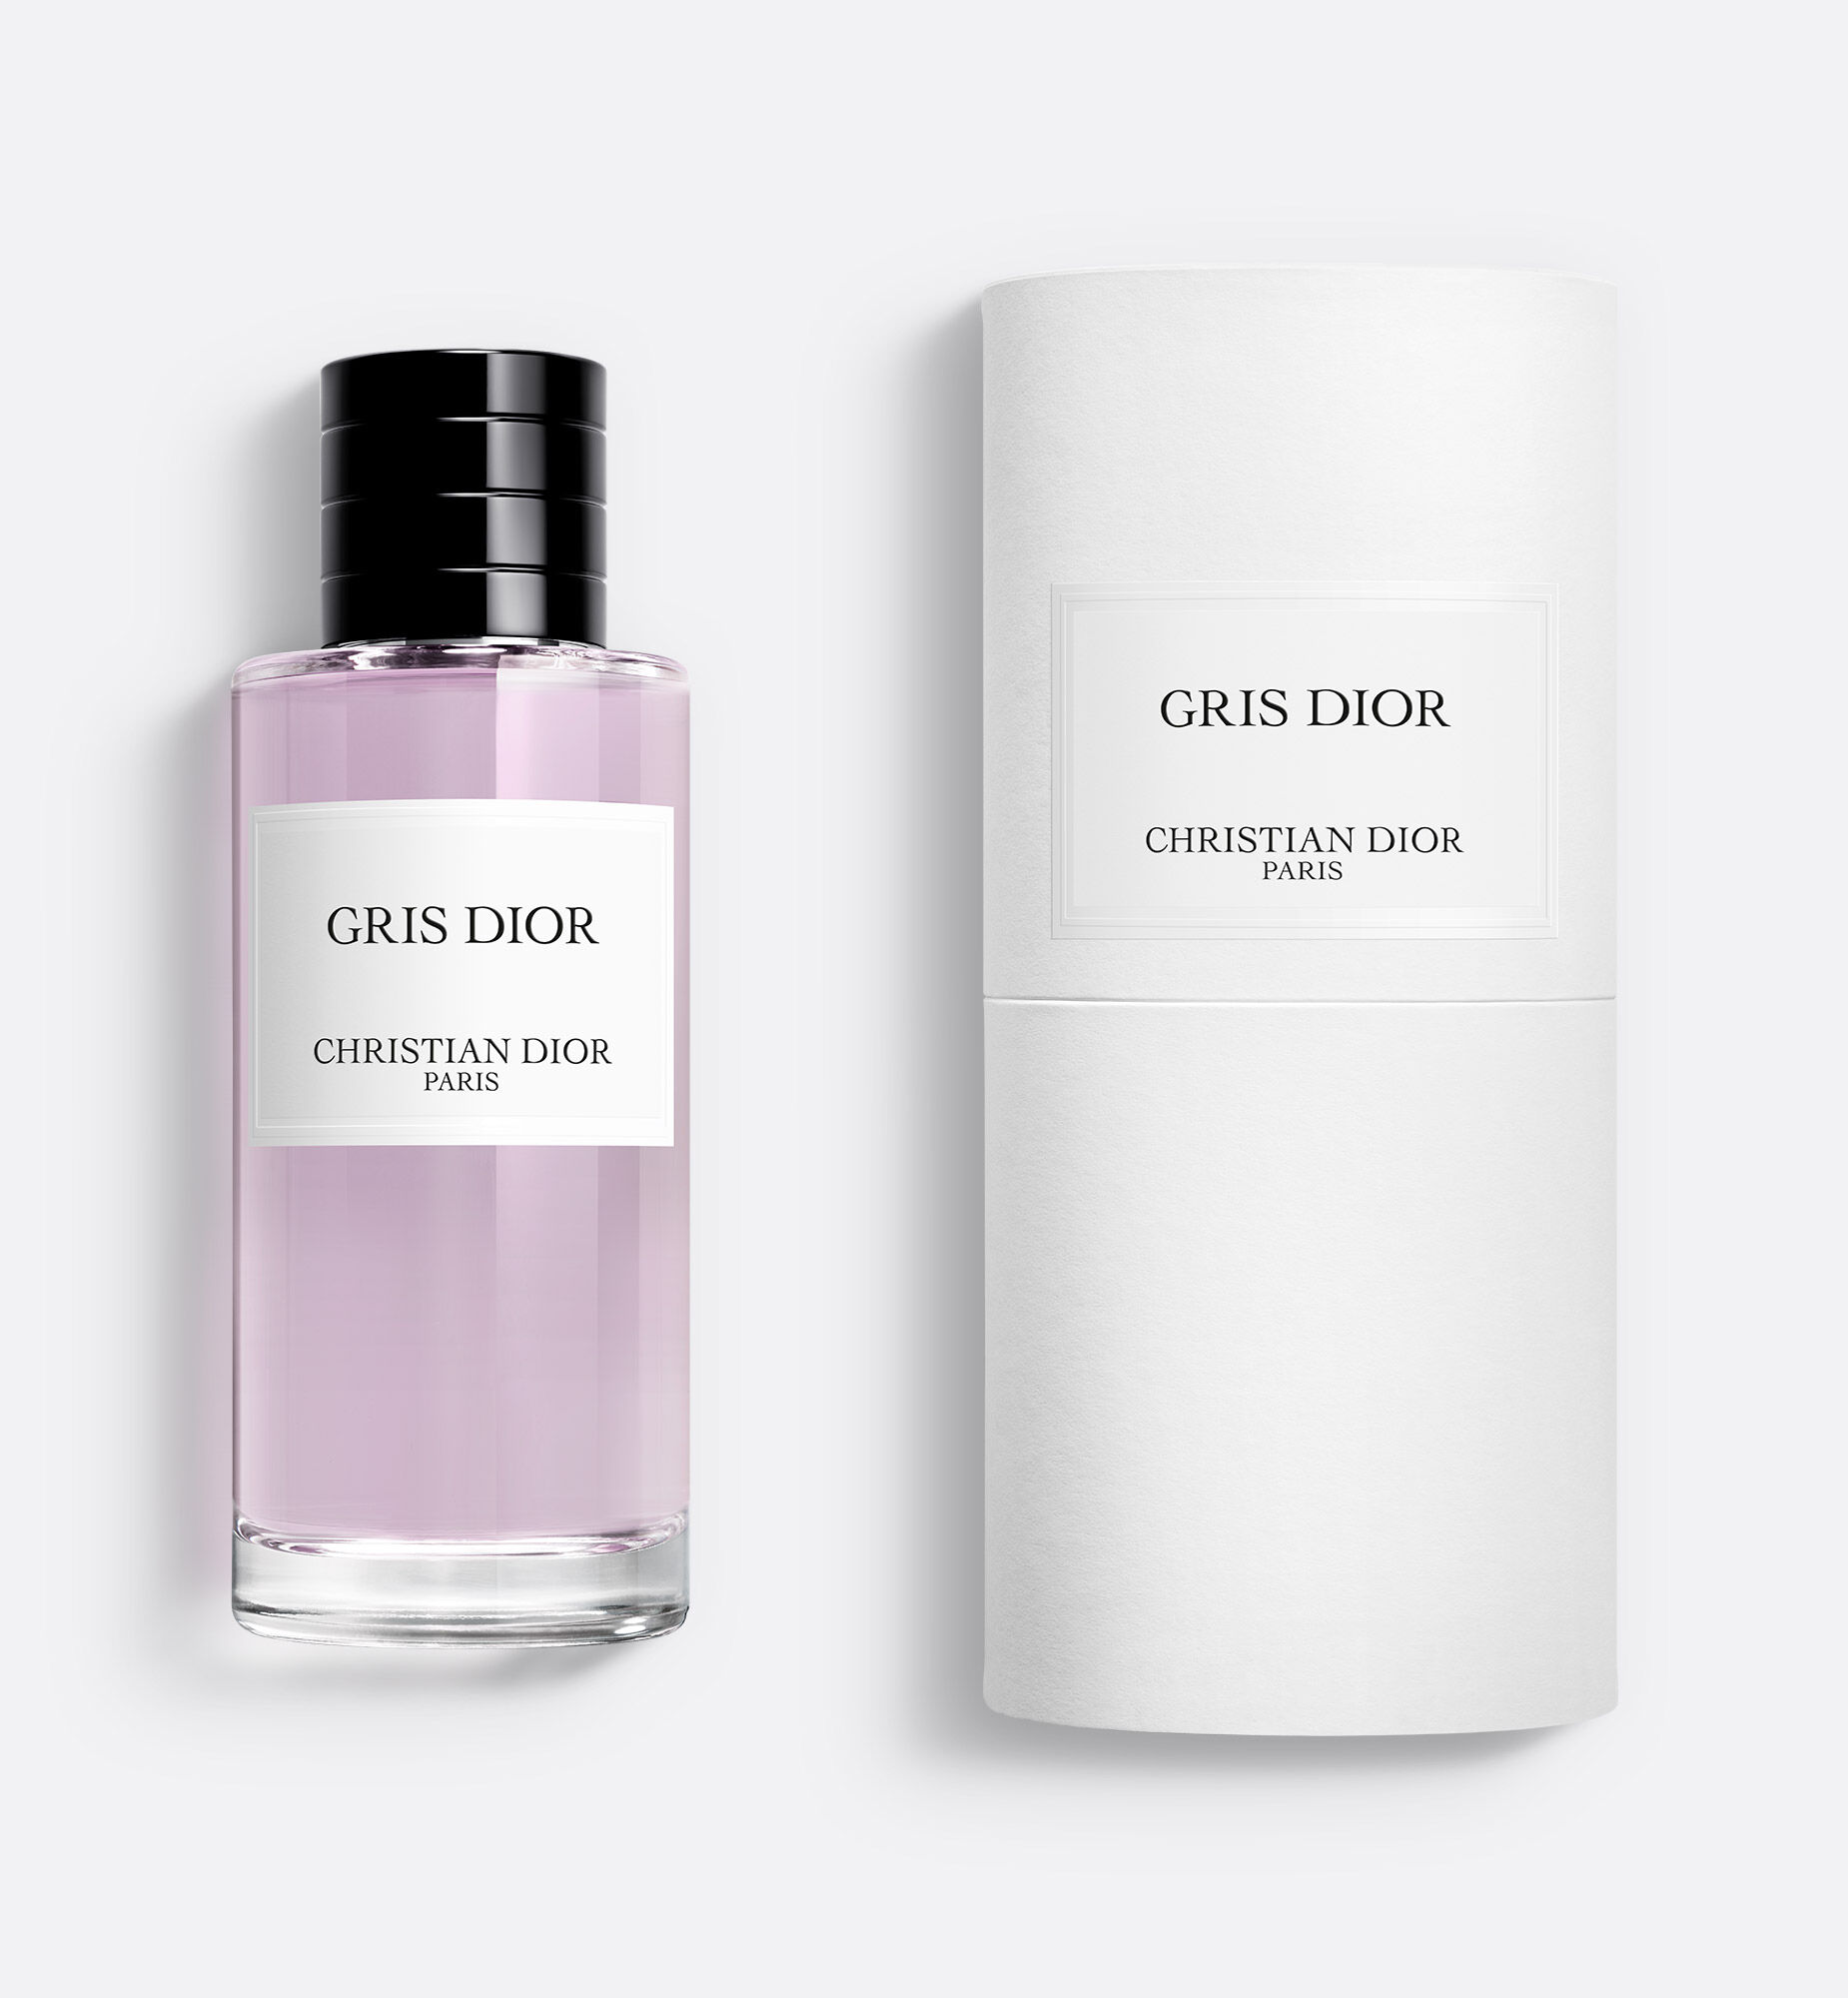 Logo Christian Dior MÌNH Parfums Christian Dior J  Adore nước Hoa  nước  hoa png tải về  Miễn phí trong suốt Văn Bản png Tải về